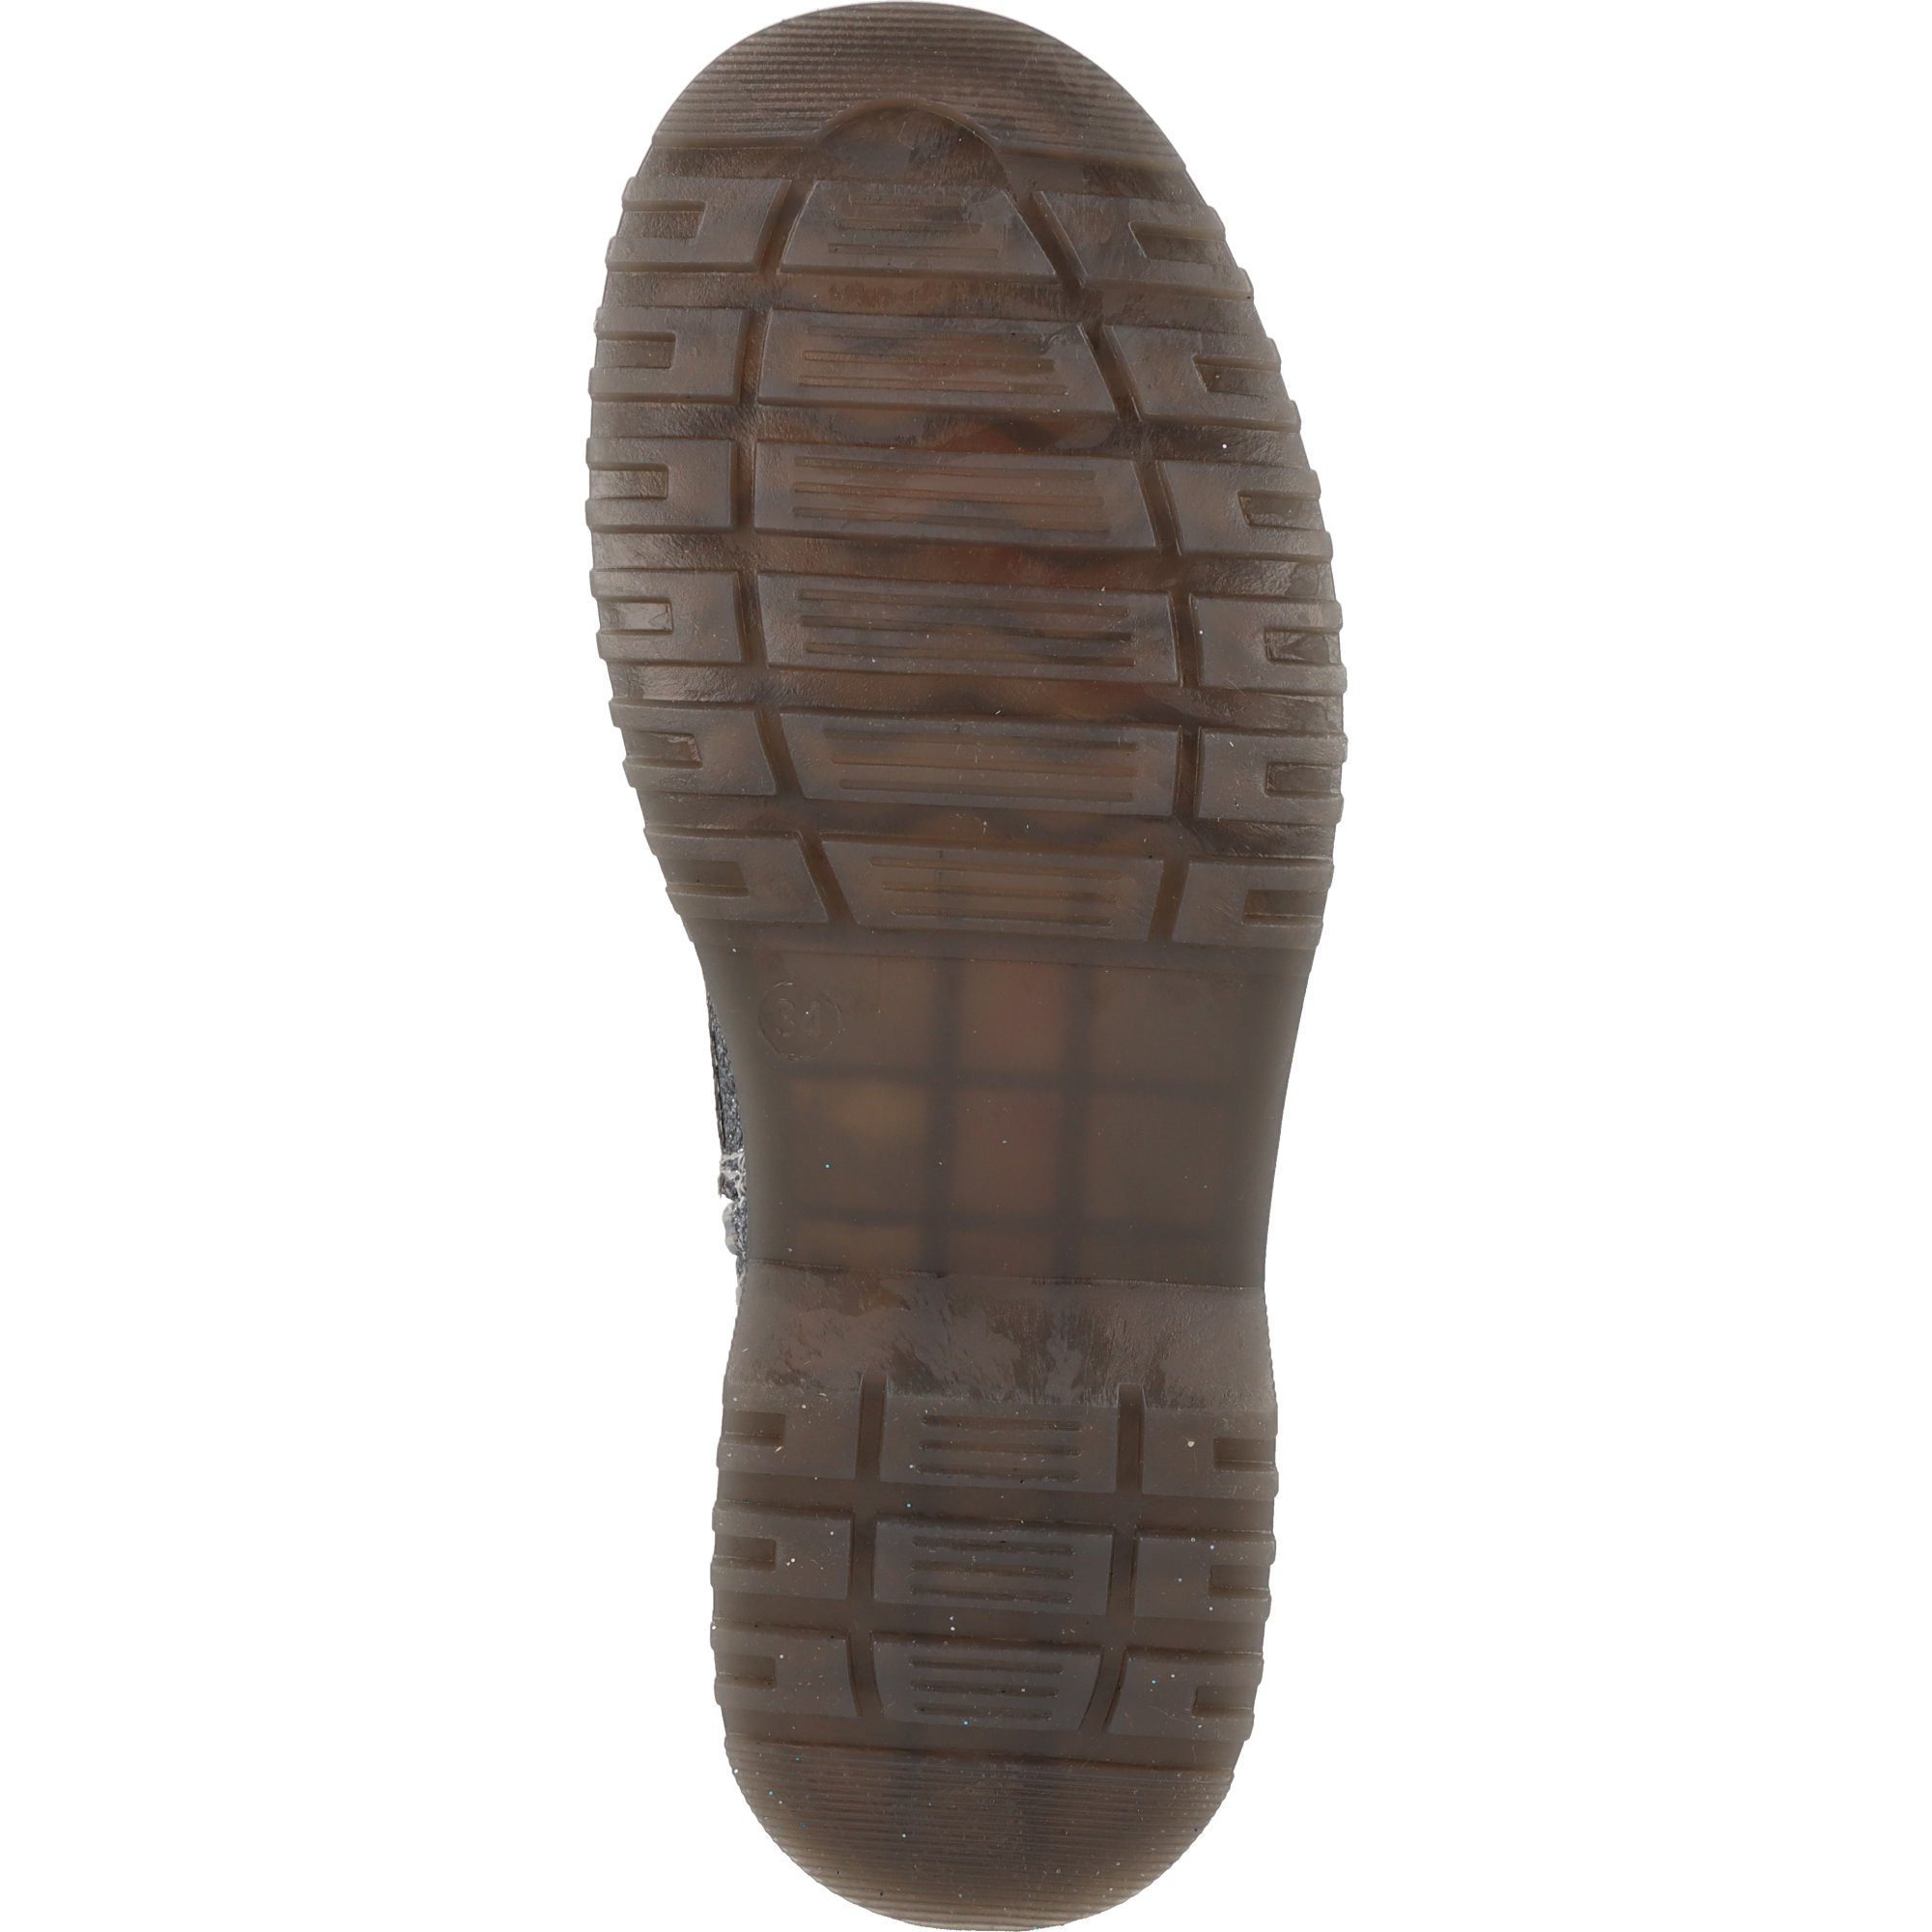 Indigo Mädchen Schuhe Boots Schnürstiefel 452-192 gefüttert Metal Winter Pewter/Gun Tex Reißverschluss Glitzer